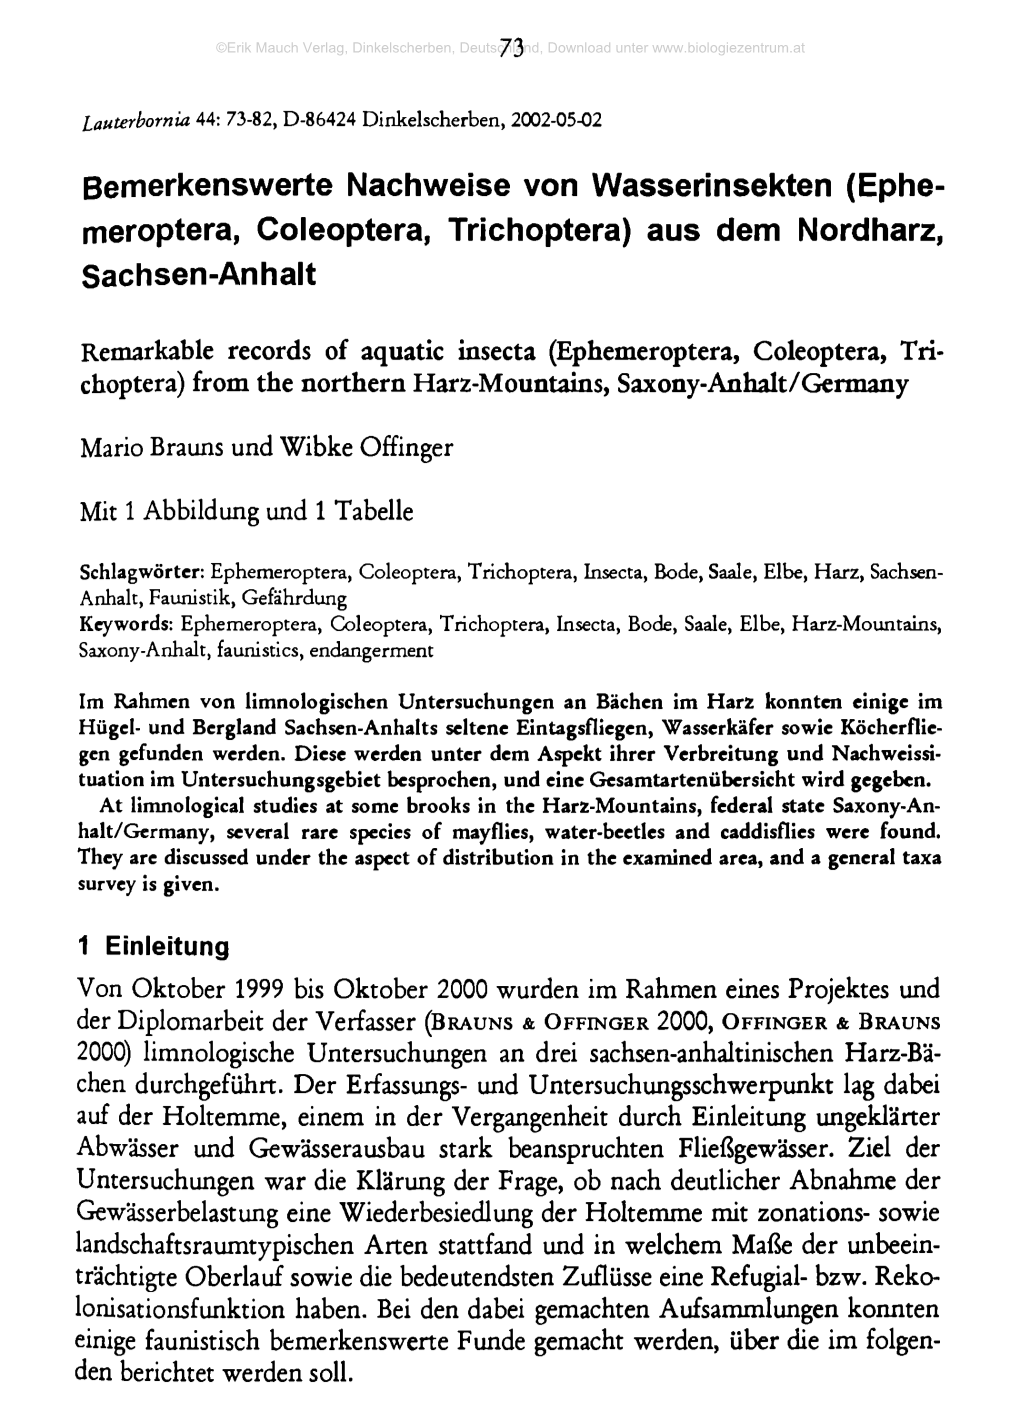 Bemerkenswerte Nachweise Von Wasserinsekten (Ephe- Meroptera, Coleoptera, Trichoptera) Aus Dem Nordharz, Sachsen-Anhalt